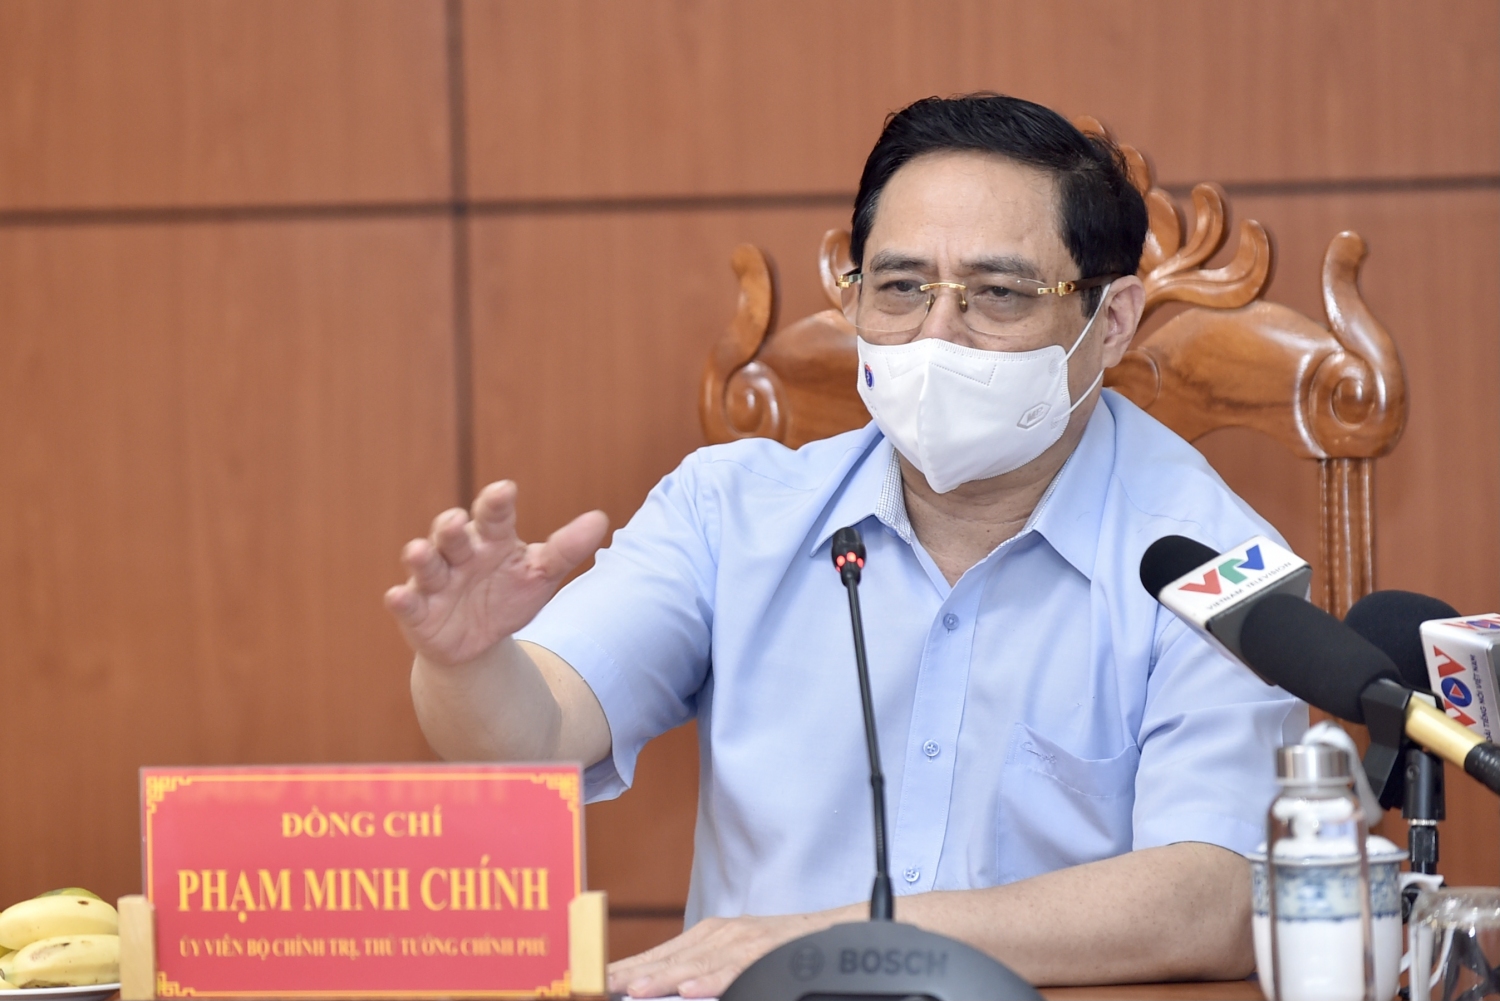 Thủ tướng Phạm Minh Chính phát biểu tại cuộc họp khẩn về phòng chống dịch COVID-19 tại đầu cầu trụ sở UBND tỉnh An Giang. Ảnh: VGP/Nhật Bắc